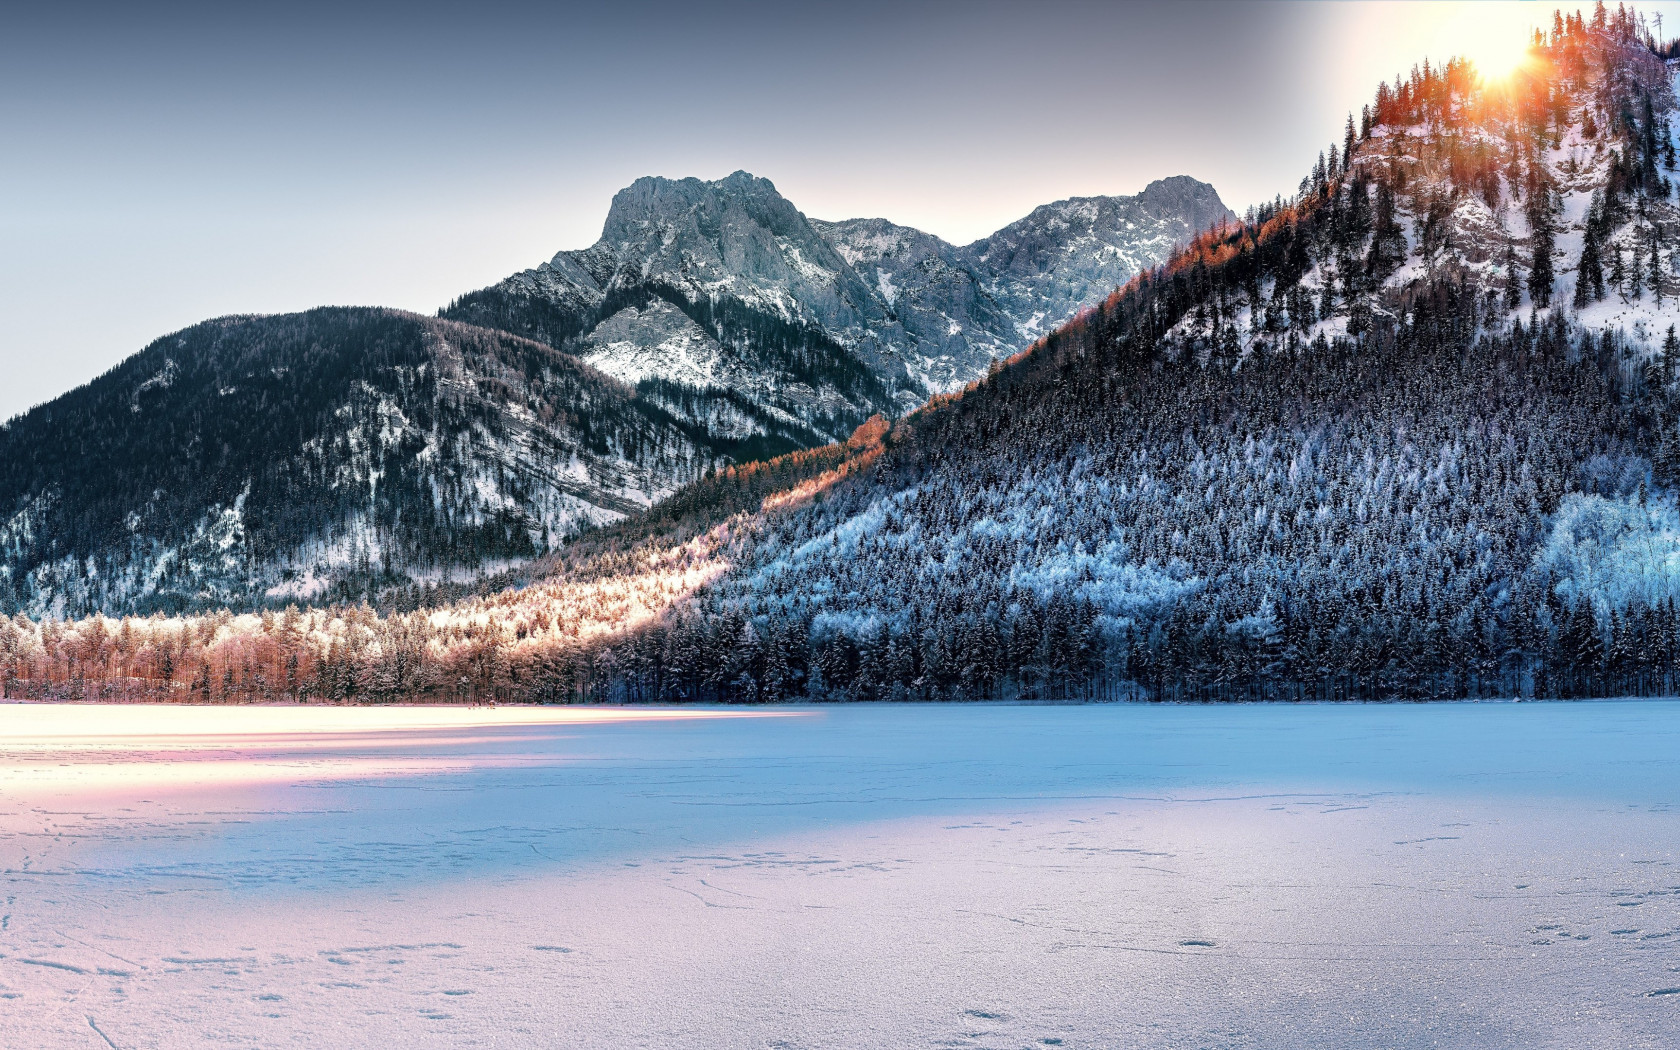 Download wallpaper: Dreamy Winter landscape 1680x1050